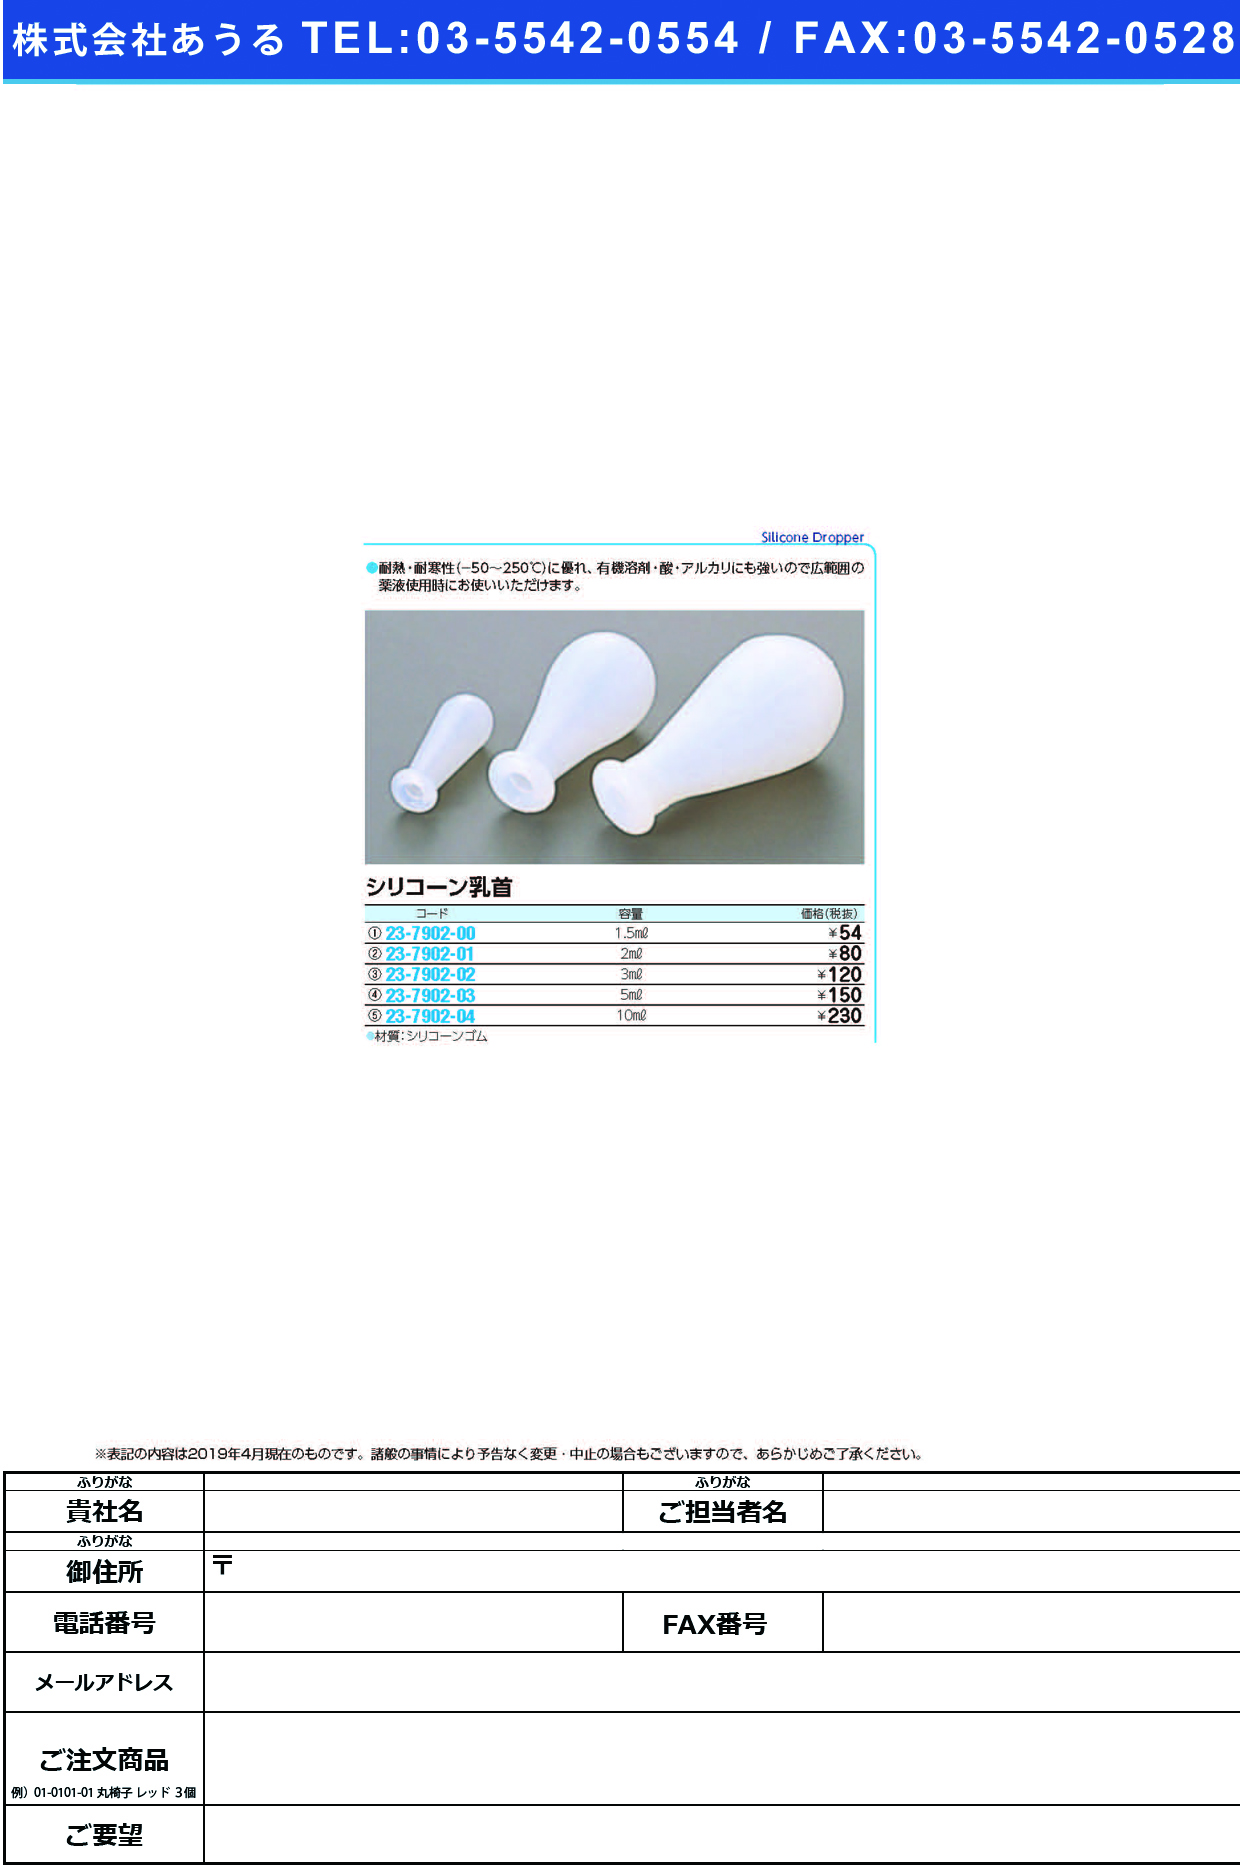 (23-7902-03)シリコーン乳首 01-327-04(5ML) ｼﾘｺｰﾝﾁｸﾋﾞ【1個単位】【2019年カタログ商品】